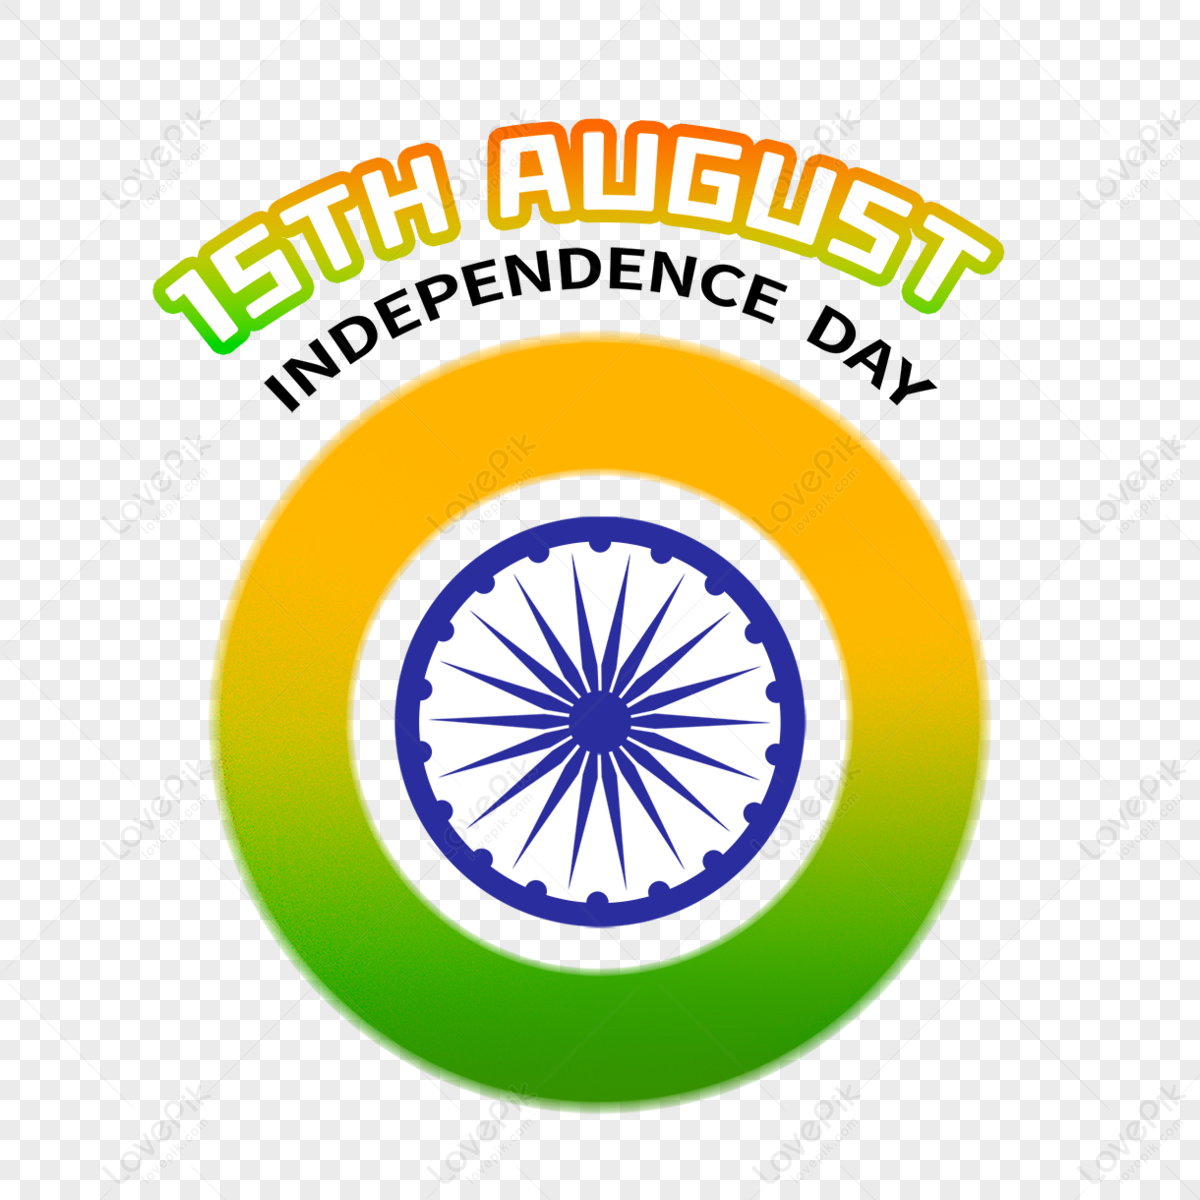 Indian Flag Vector Design Images, Indian Flag Design Png, Indian Flag Logo, Indian  Flag Png, Indian Flag Design PNG Image For Free Download